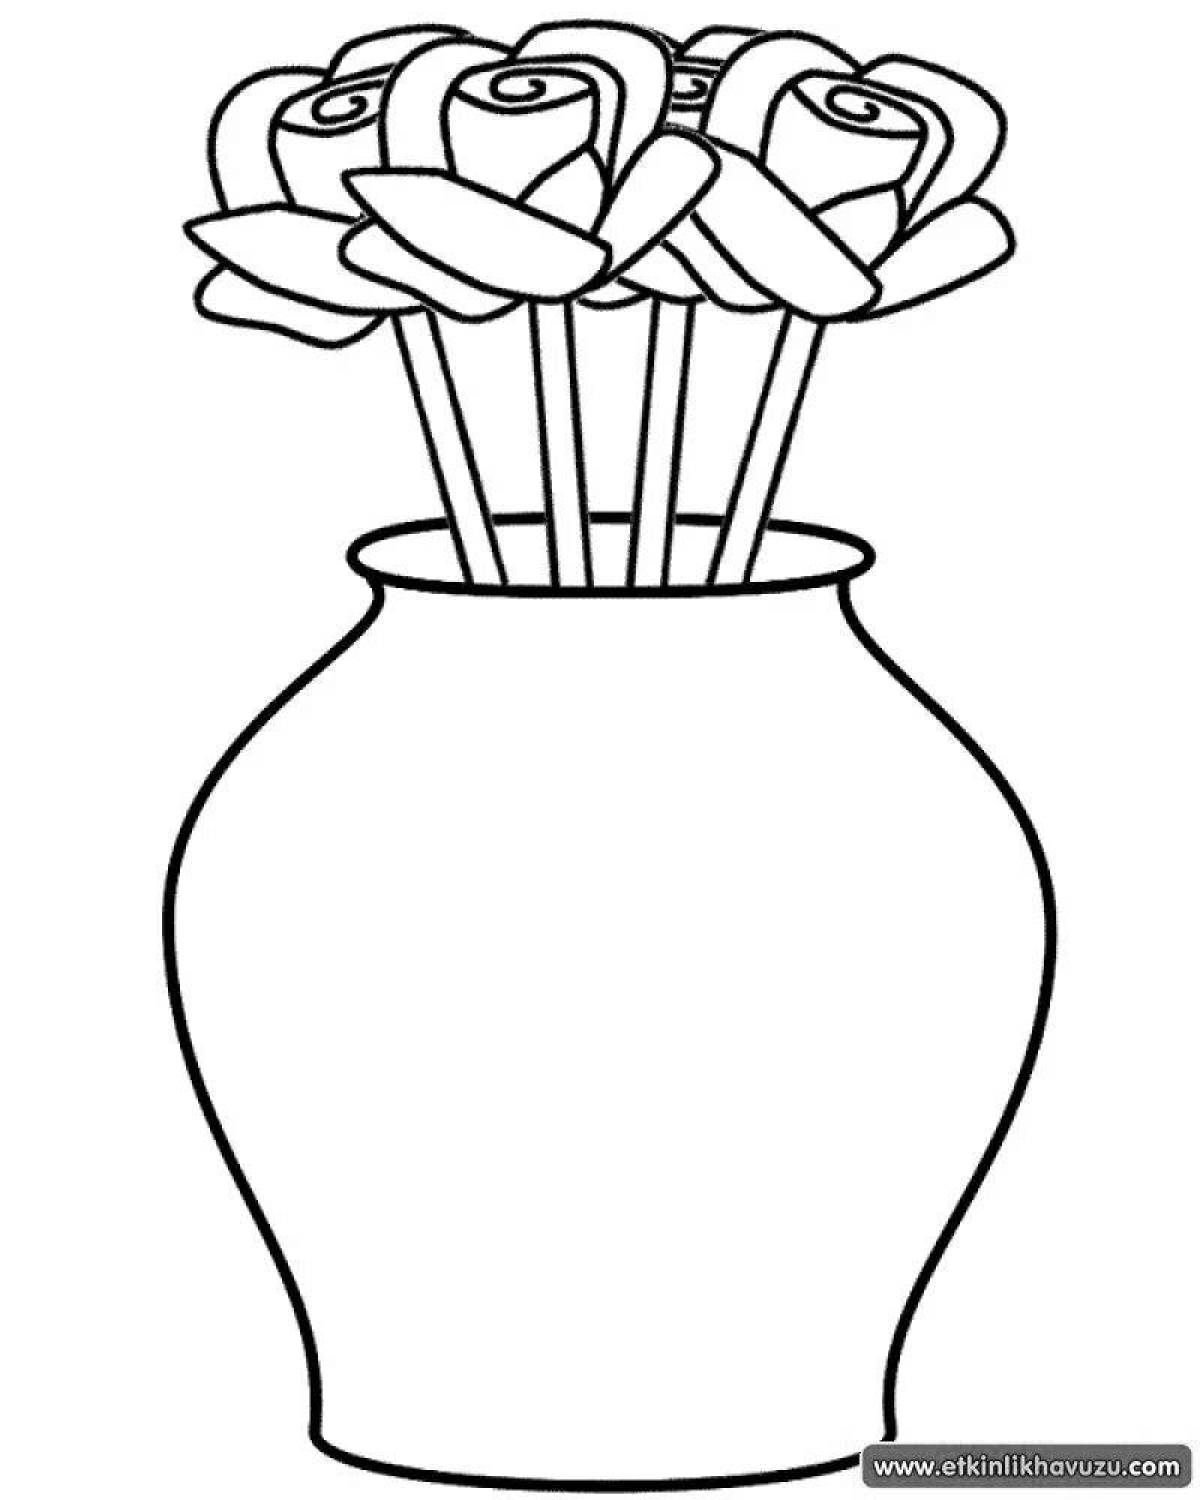 Яркая ваза с цветами раскраска для детей